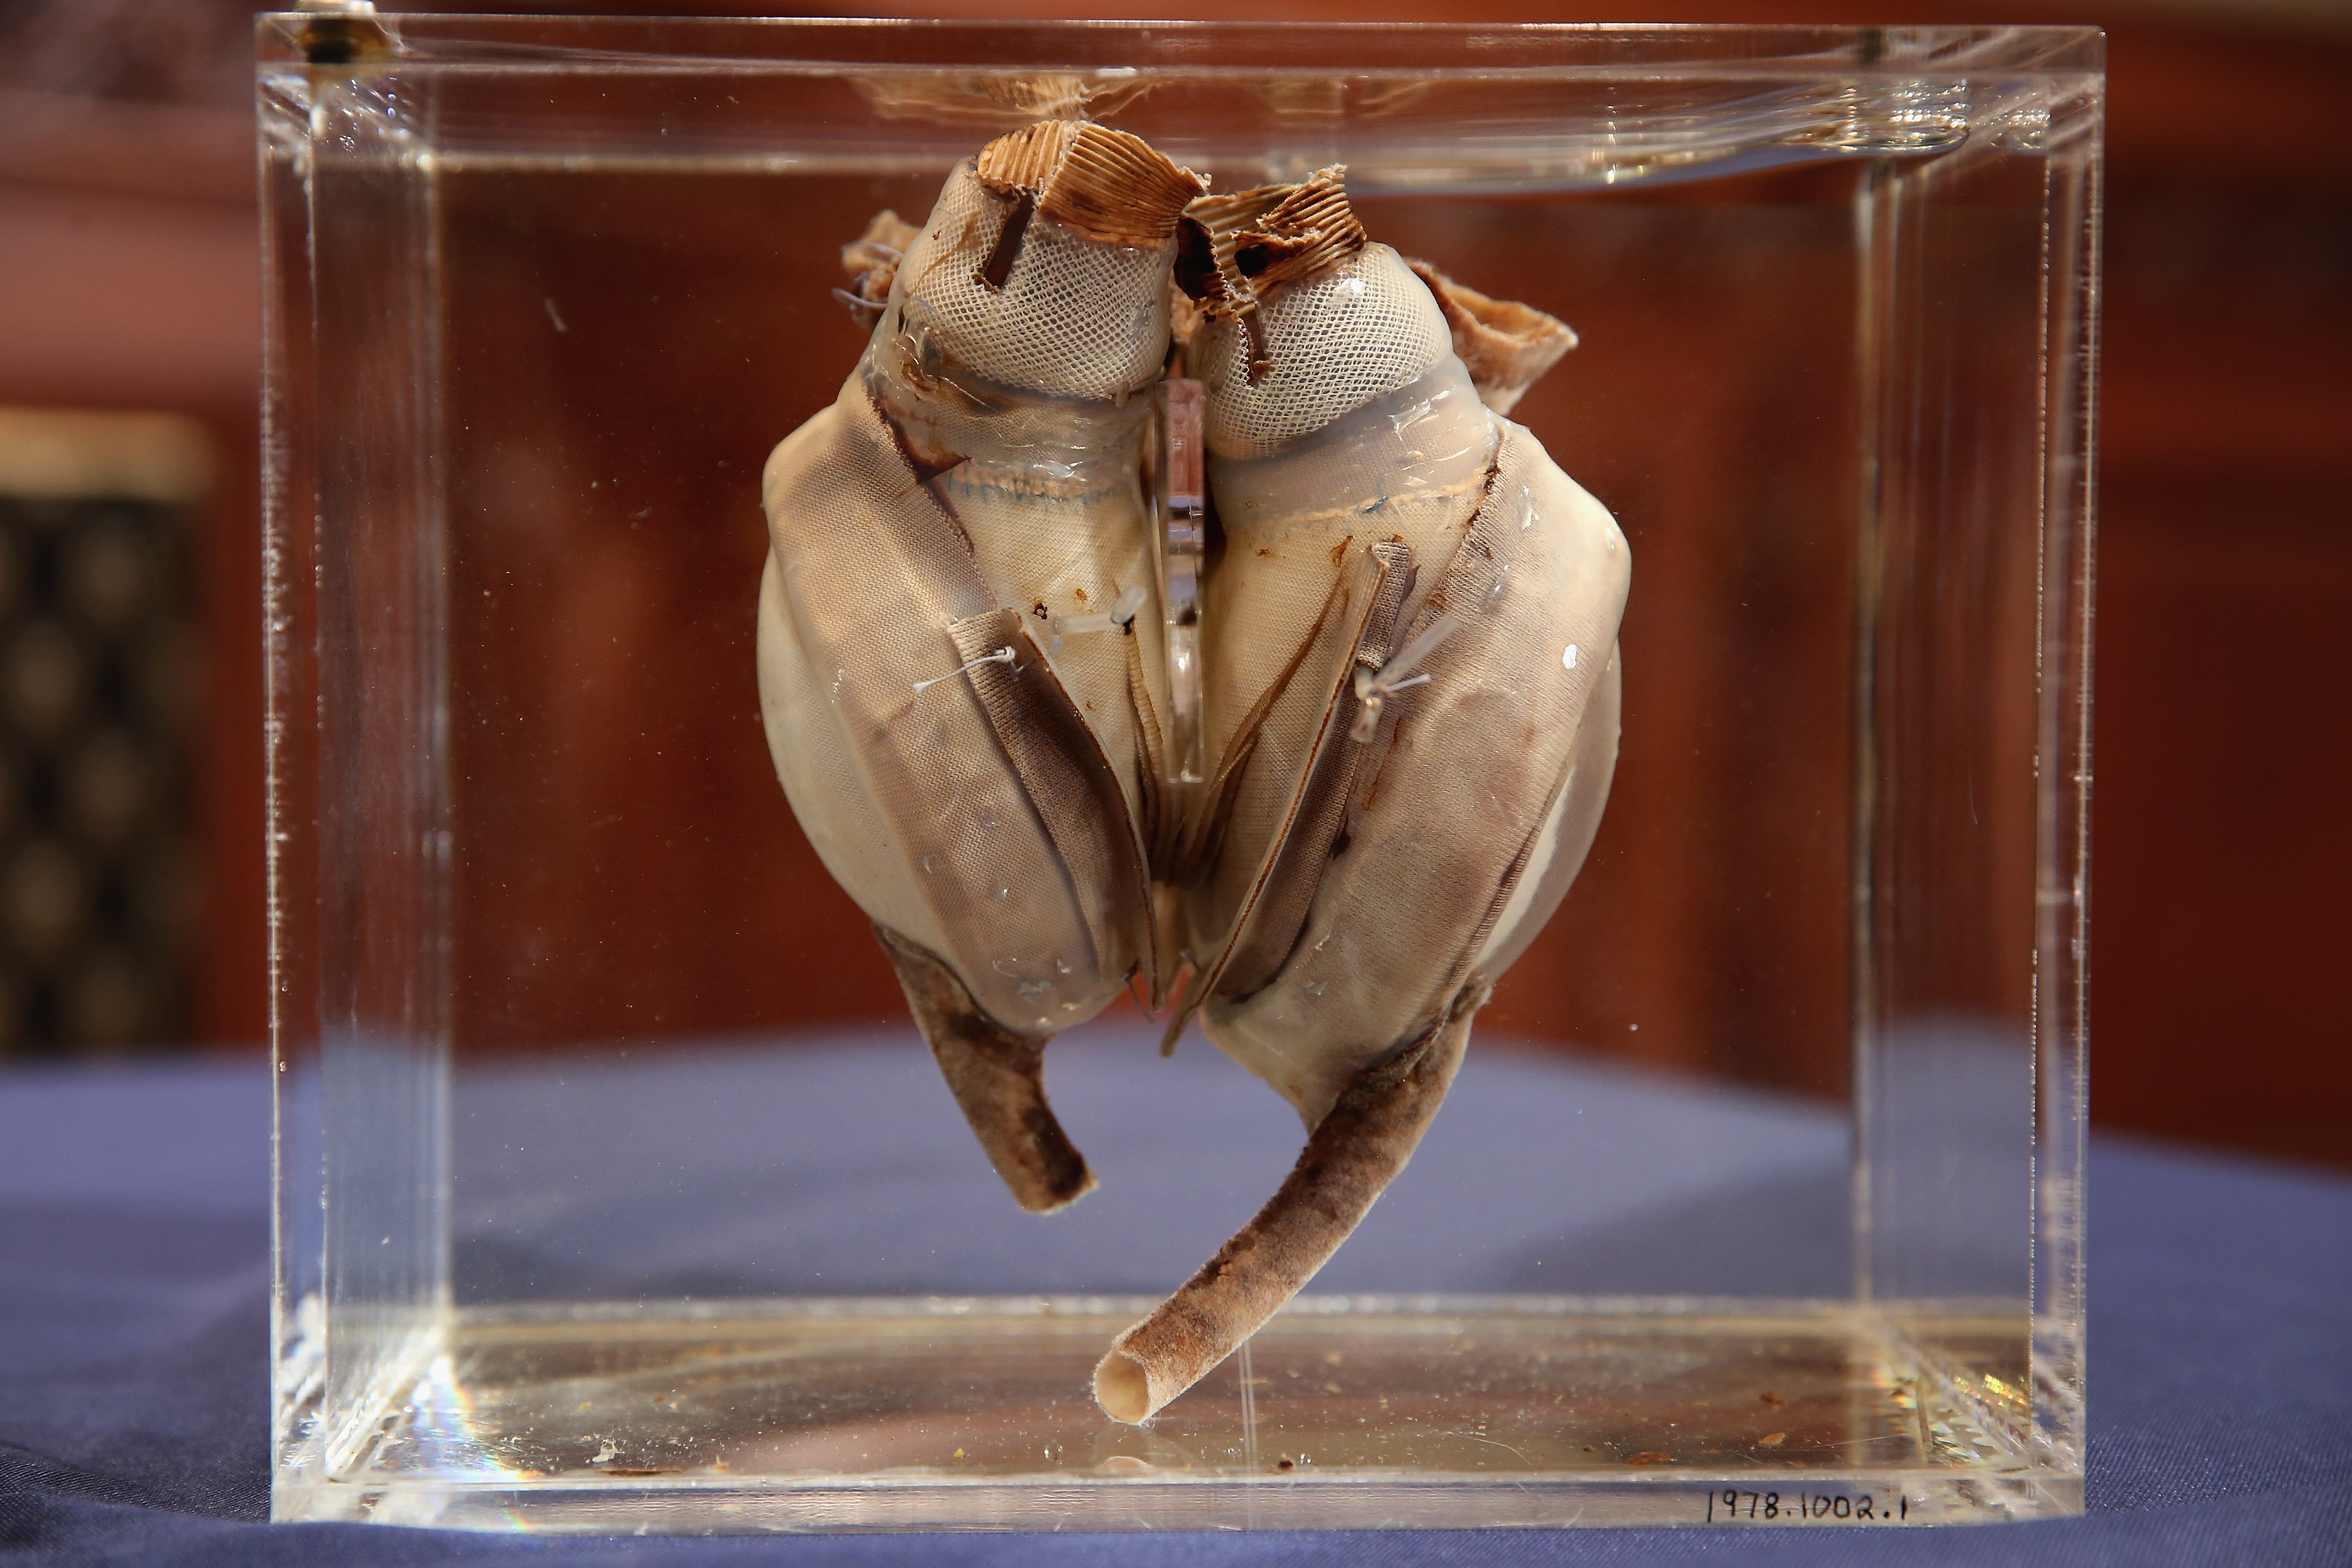 Il primo cuore artificiale impiantato in un essere umano sviluppato da Liotta in collaborazione con Cooley / (Chip Somodevilla / Getty Images)